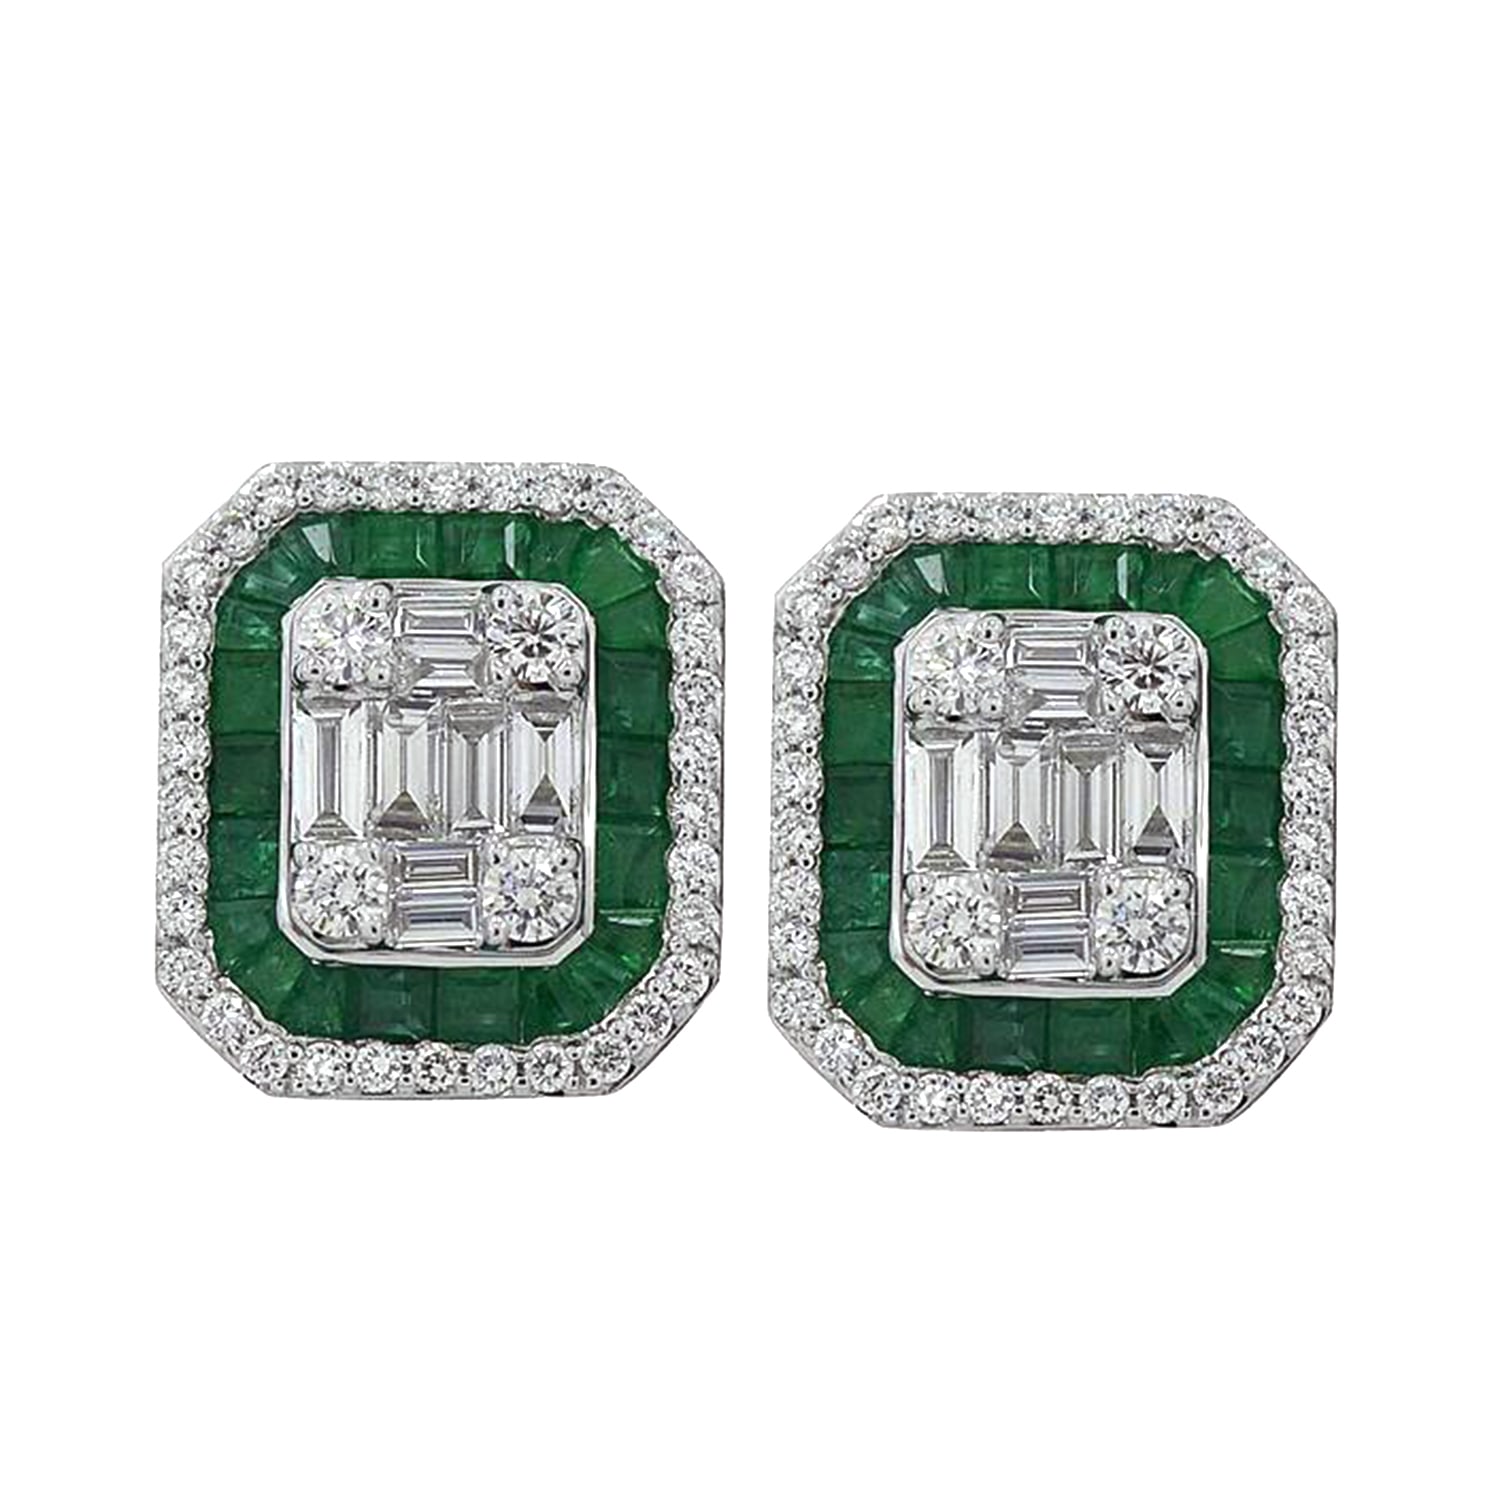 Women’s Green / White Solid 18K White Gold Green Emerald Gemstone Natural Baguette Diamond Stud Earrings Artisan